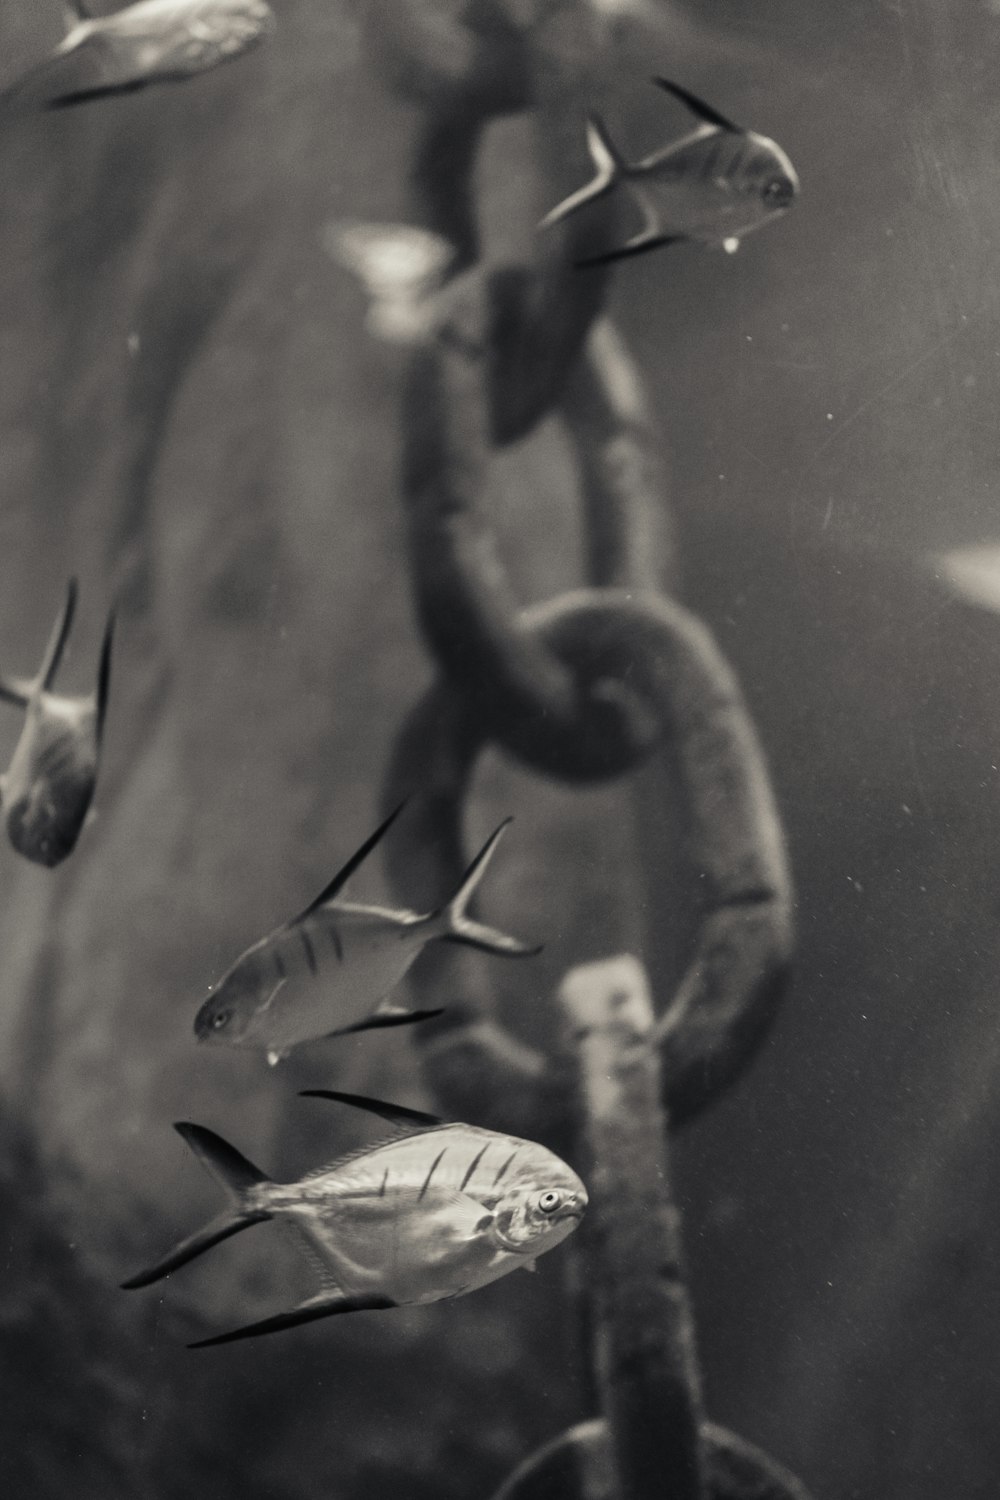 Schwarz-Weiß-Fotografie eines Kettenglieds und eines Fisches